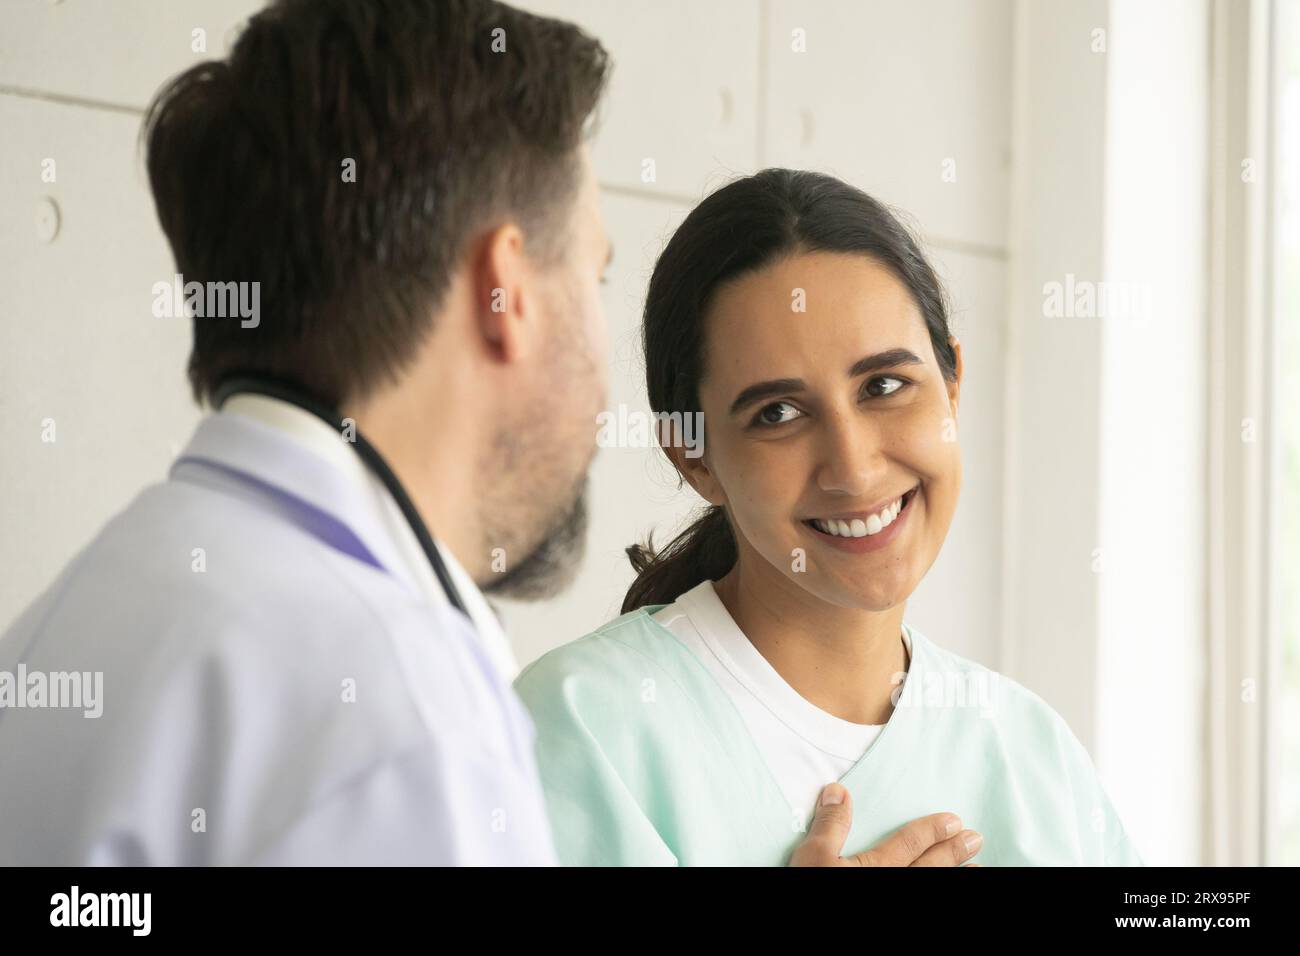 Médecin caucasien relaxant avec une patiente hispanique. L'examen médical et le bilan de santé avec le concept de médecin. Banque D'Images